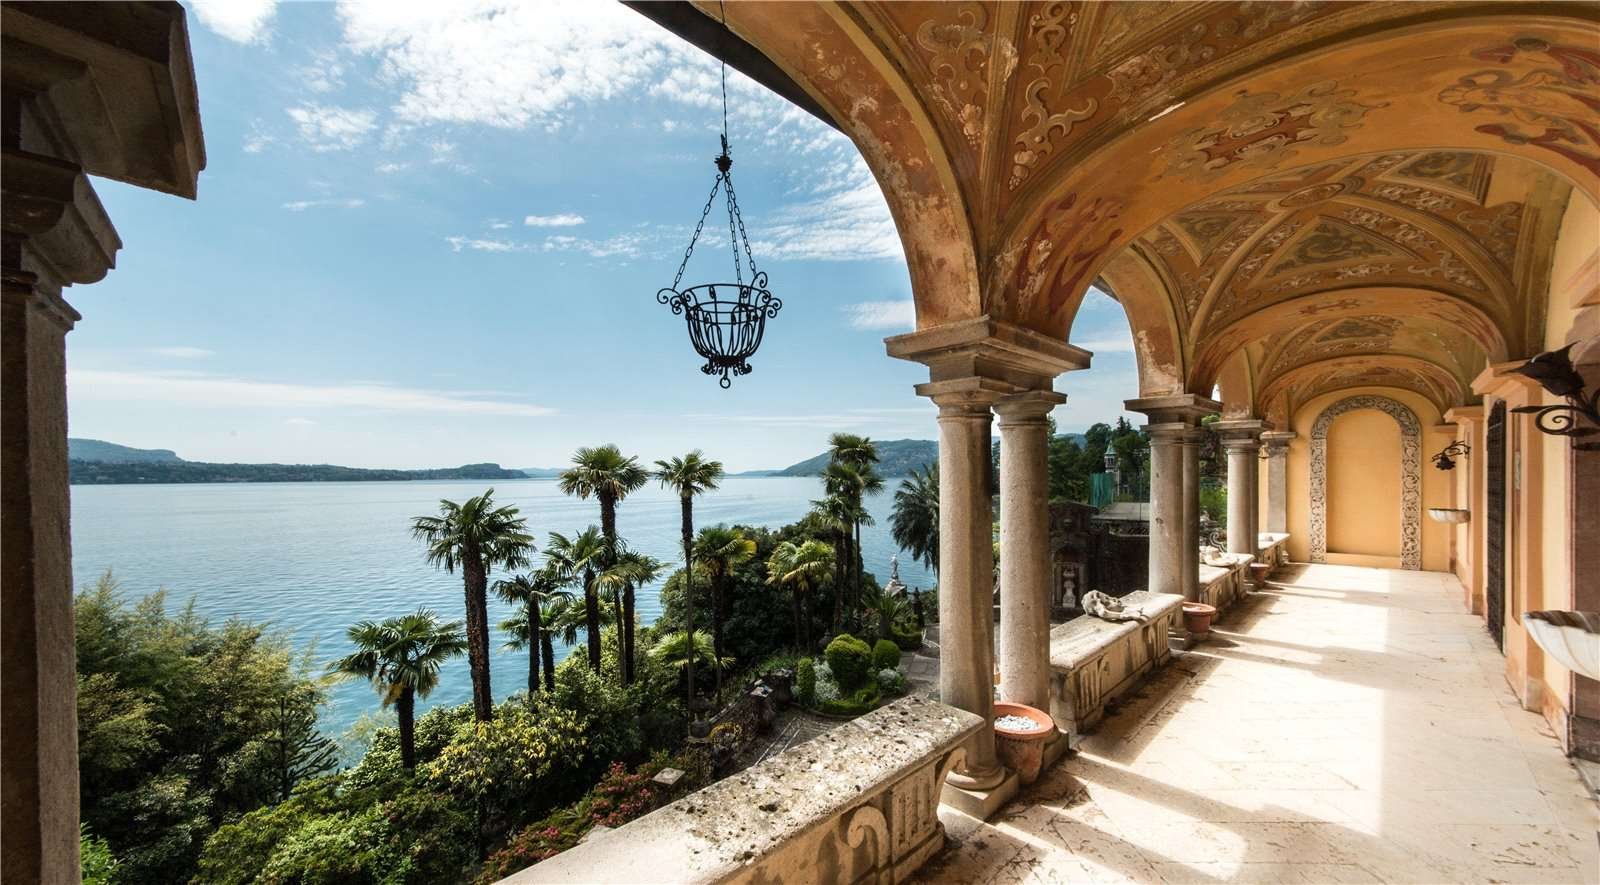 Francis YorkVilla L'Eremitaggio: Historic Villa On Lake Maggiore 7.jpg